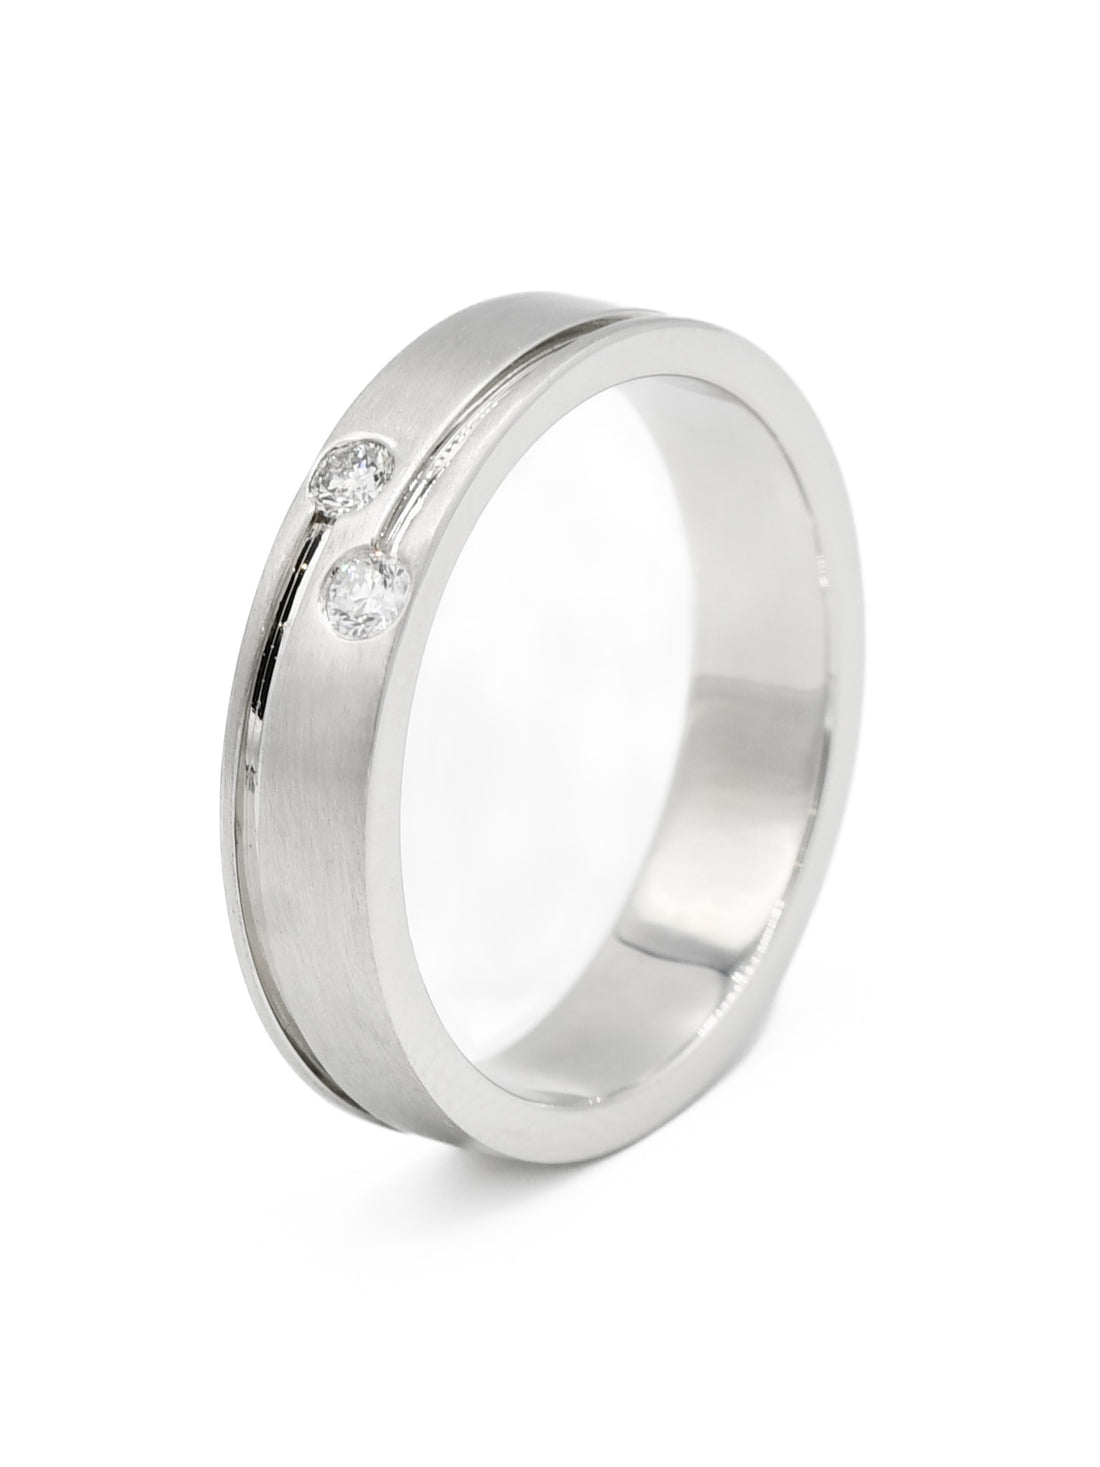 950 Platinum 0.10ct Diamond Mens Ring - Roop Darshan